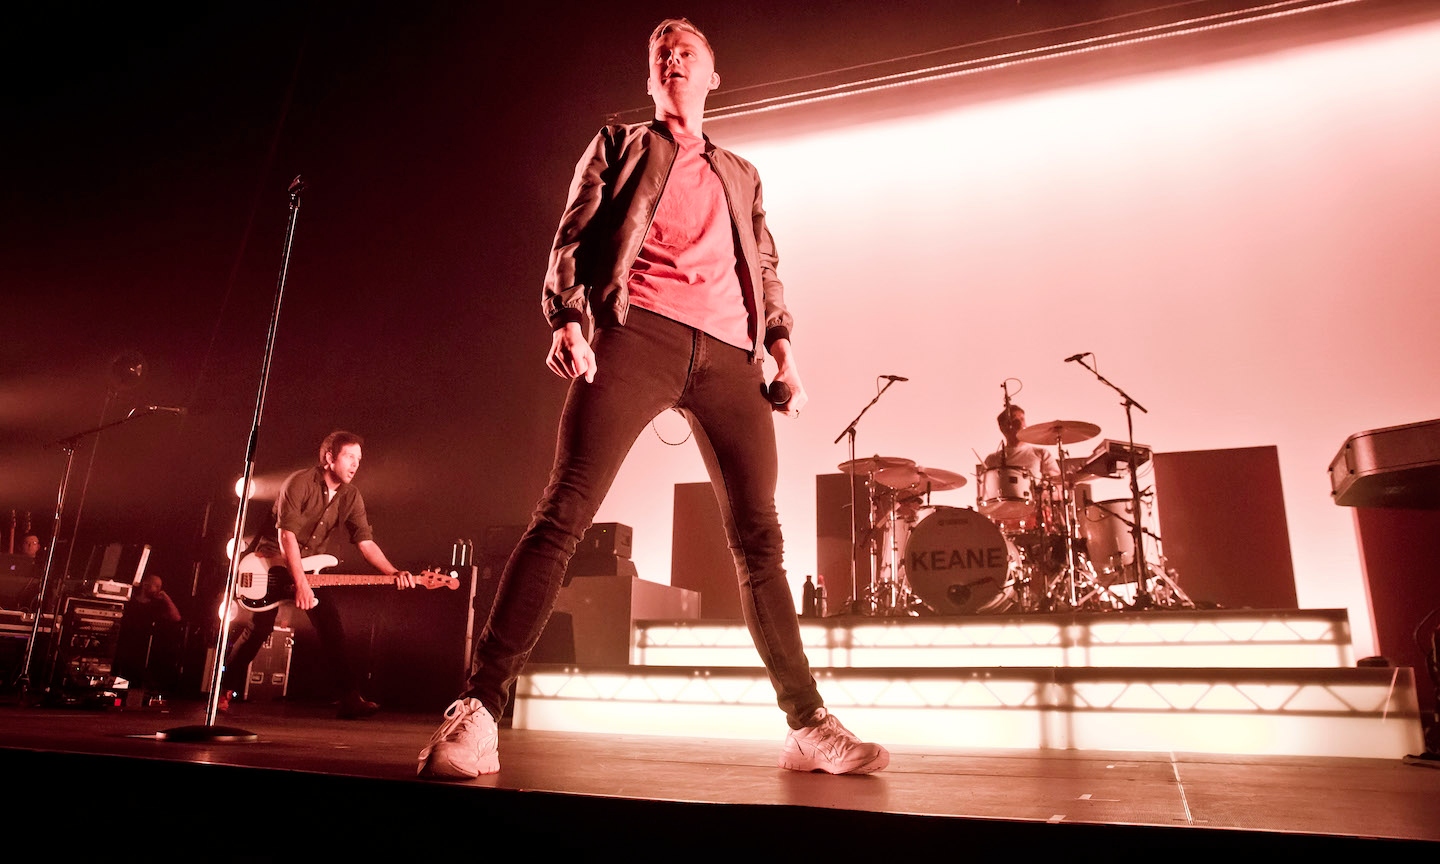 Ryan Tedder on Making OneRepublic's Soundtrack Smash 'I Ain't Worried